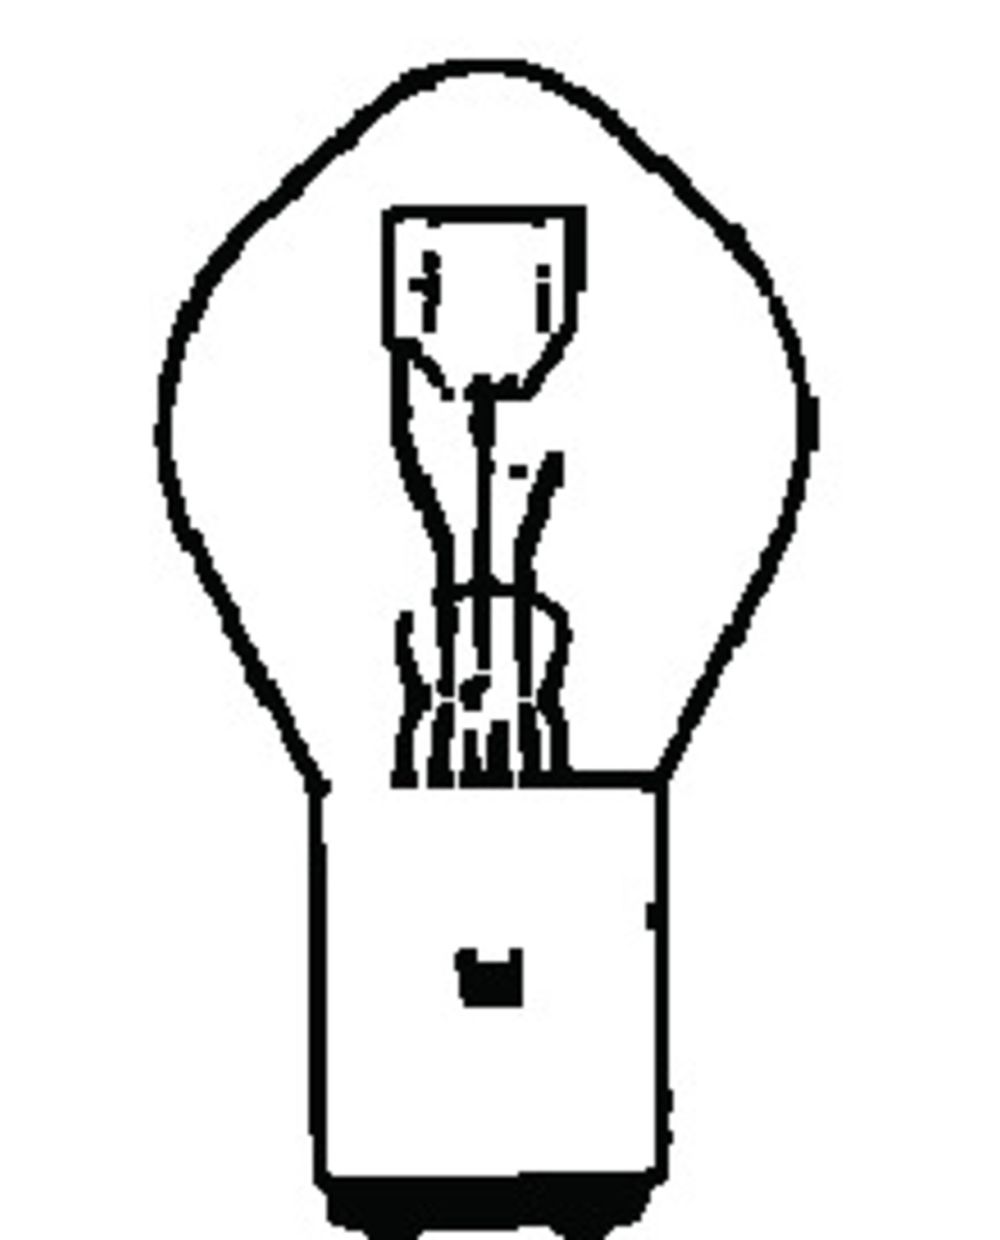 Ampoule de phare BA20D 6V 35/35W - pièce équipement